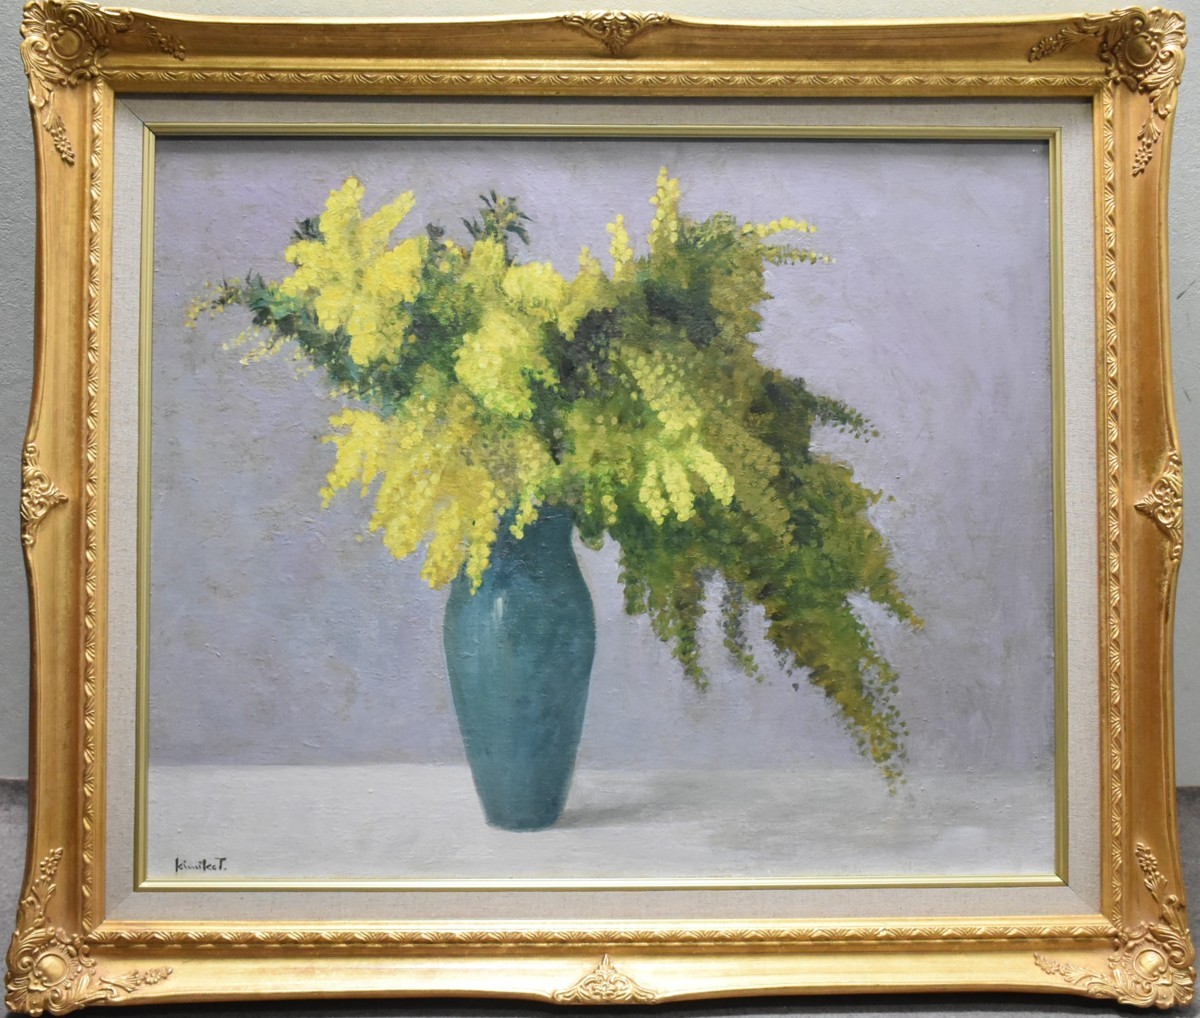 schöne Mimose, Gelbe Blumen sind ein gutes Zeichen! Kimiko Takamura, Nr. 12 Mimosa Ölgemälde [Masami Galerie. 5, 000 Stücke ausgestellt!], Malerei, Ölgemälde, Natur, Landschaftsmalerei